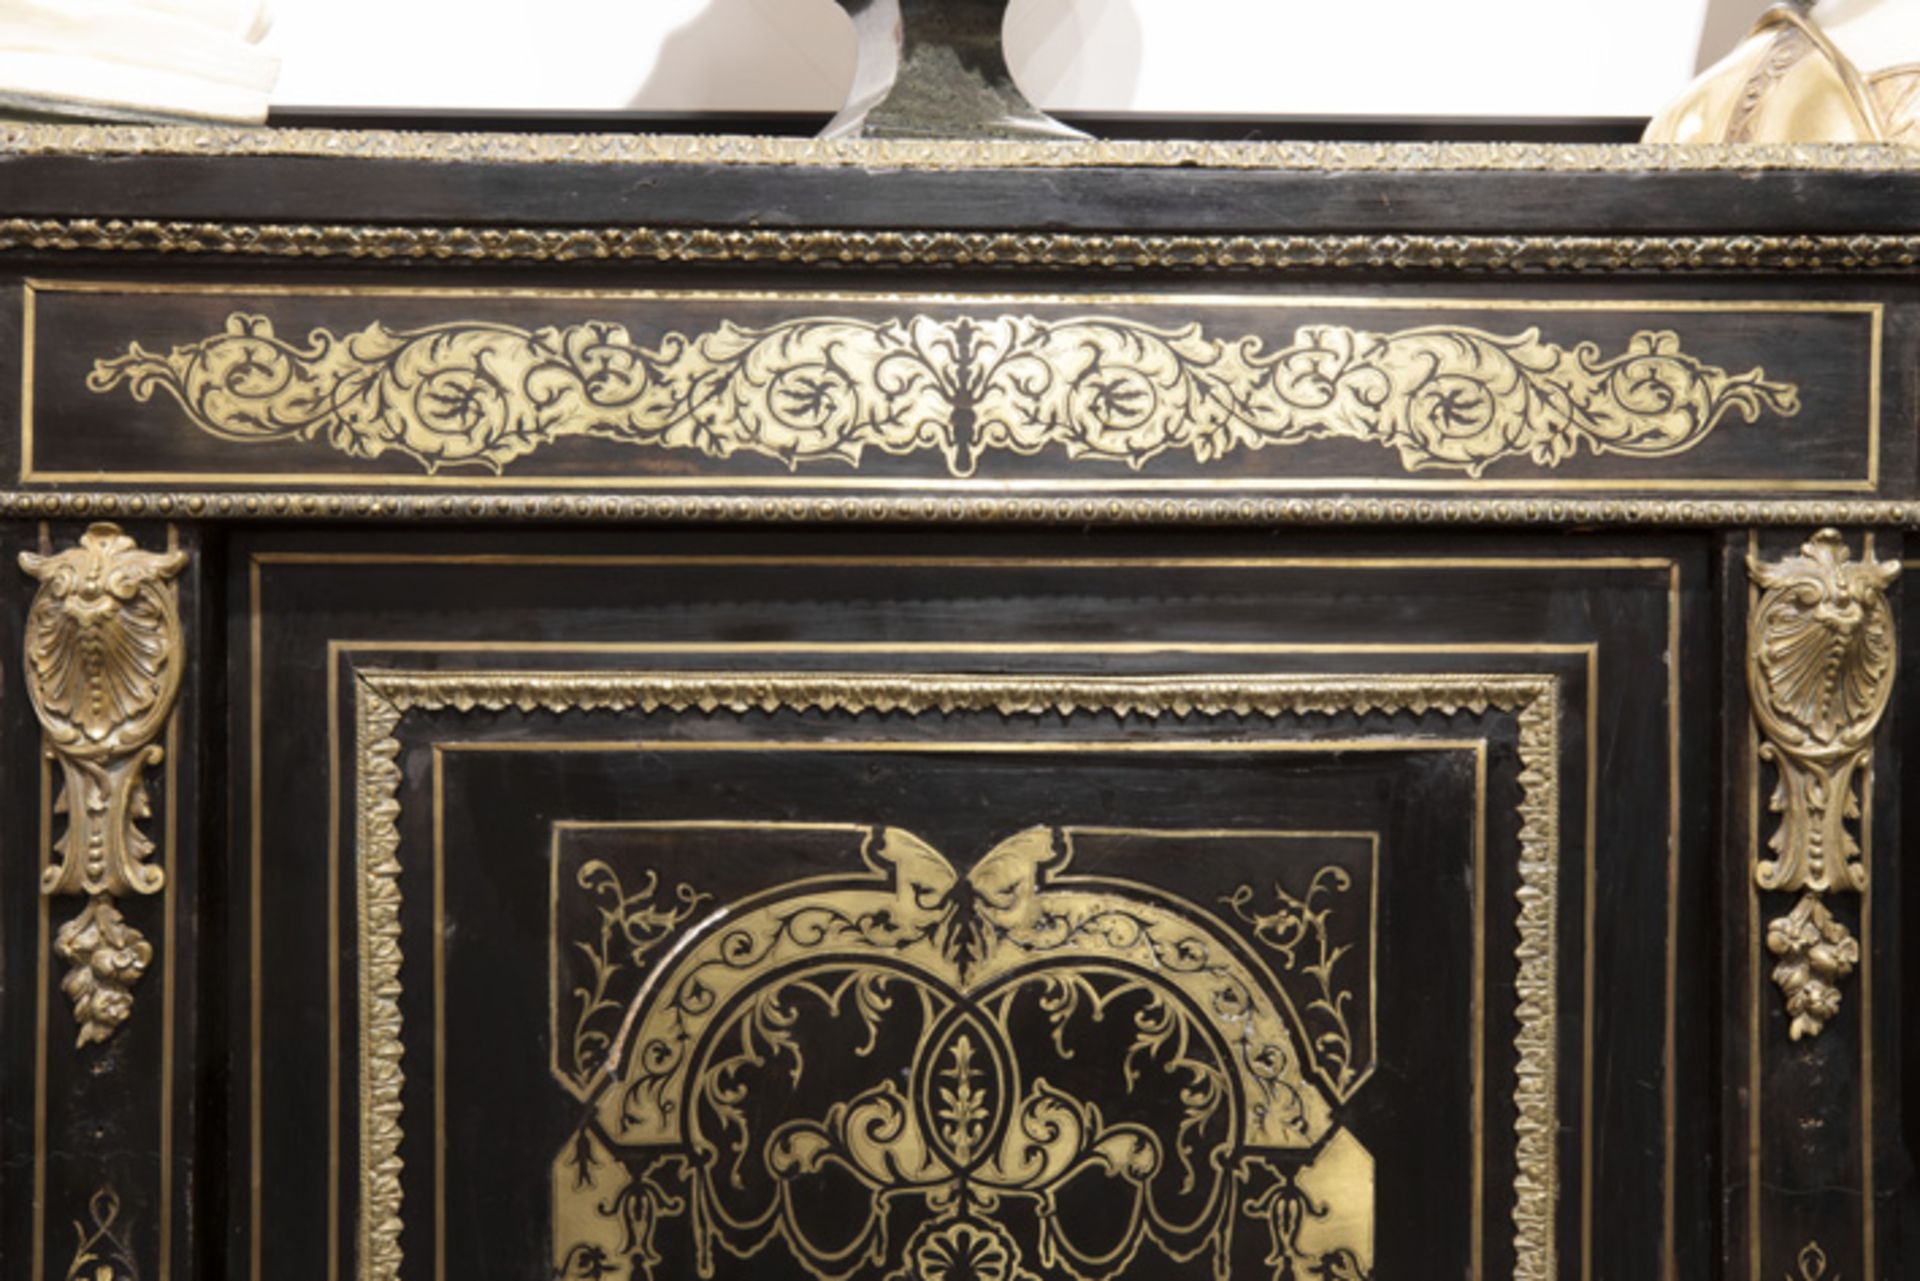 FRANKRIJK - ca 1850/70 barok Napoleon III - dressoir in "Boulle" met ebbenhout ingelegd met koper en - Image 2 of 2